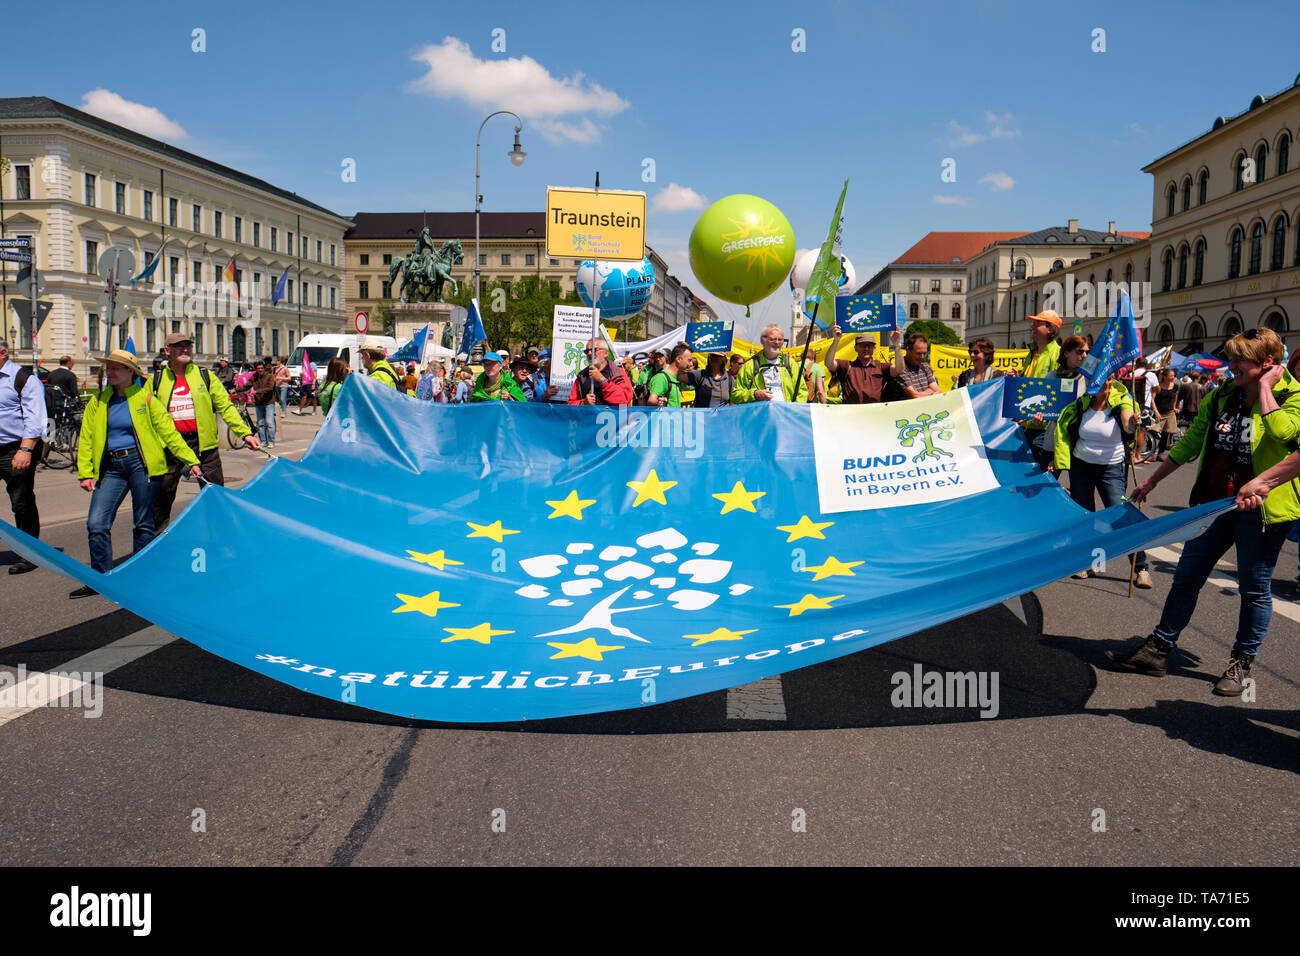 Pro UE Europa Natürlich partidarios de una Europa para todos marzo en Munich Alemania, 19 de mayo de 2019 Foto de stock